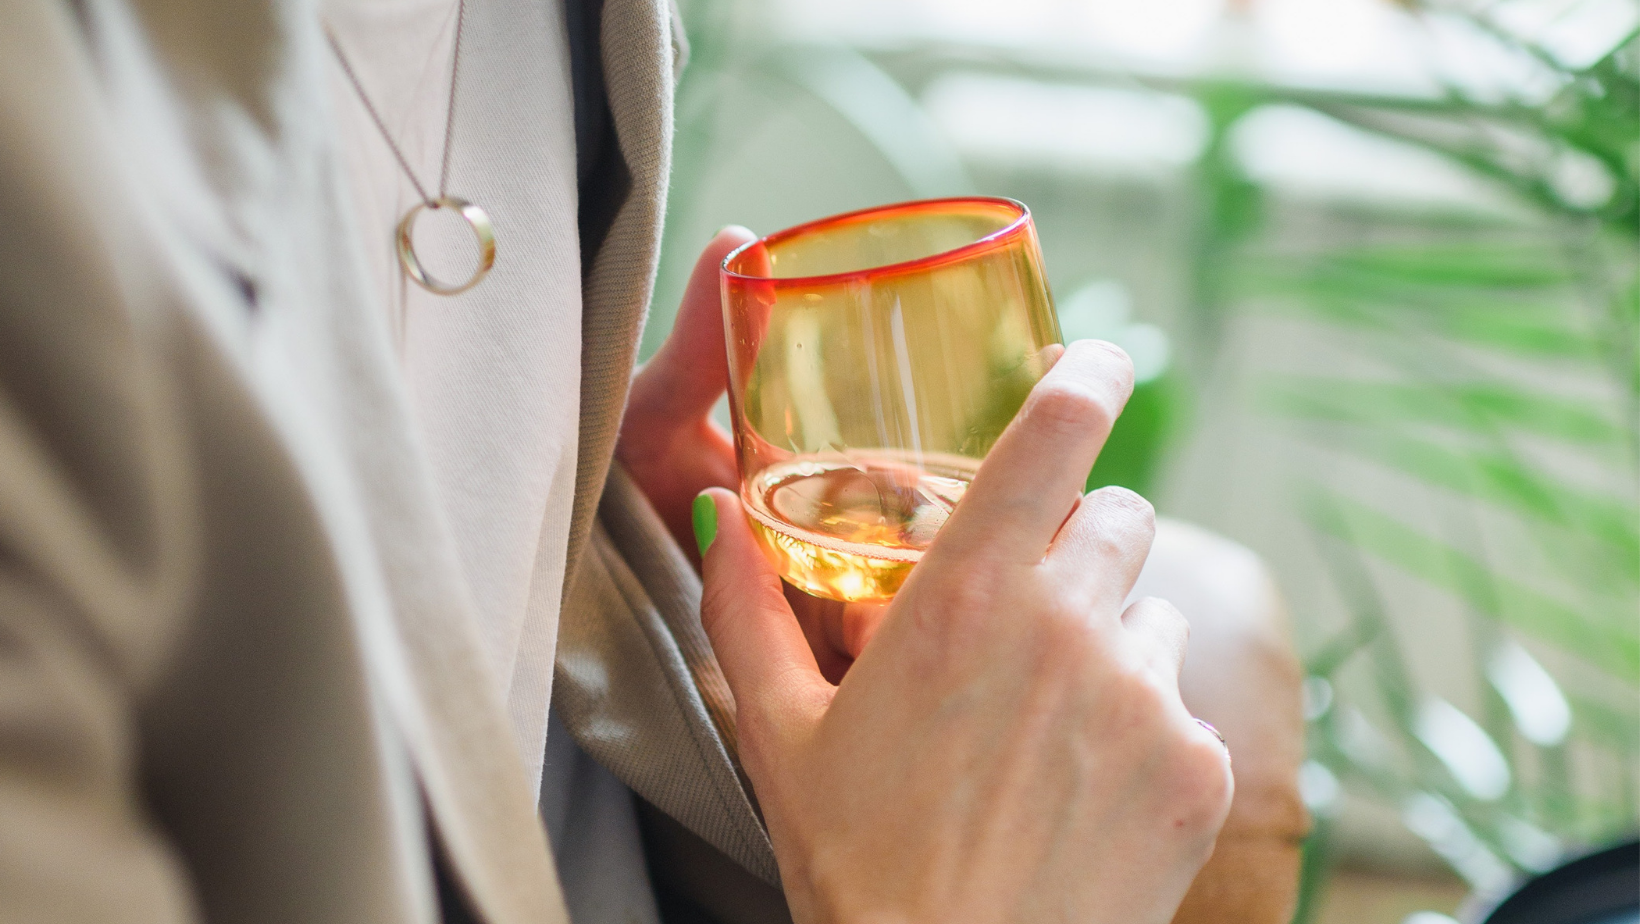 How to break your drinking habit